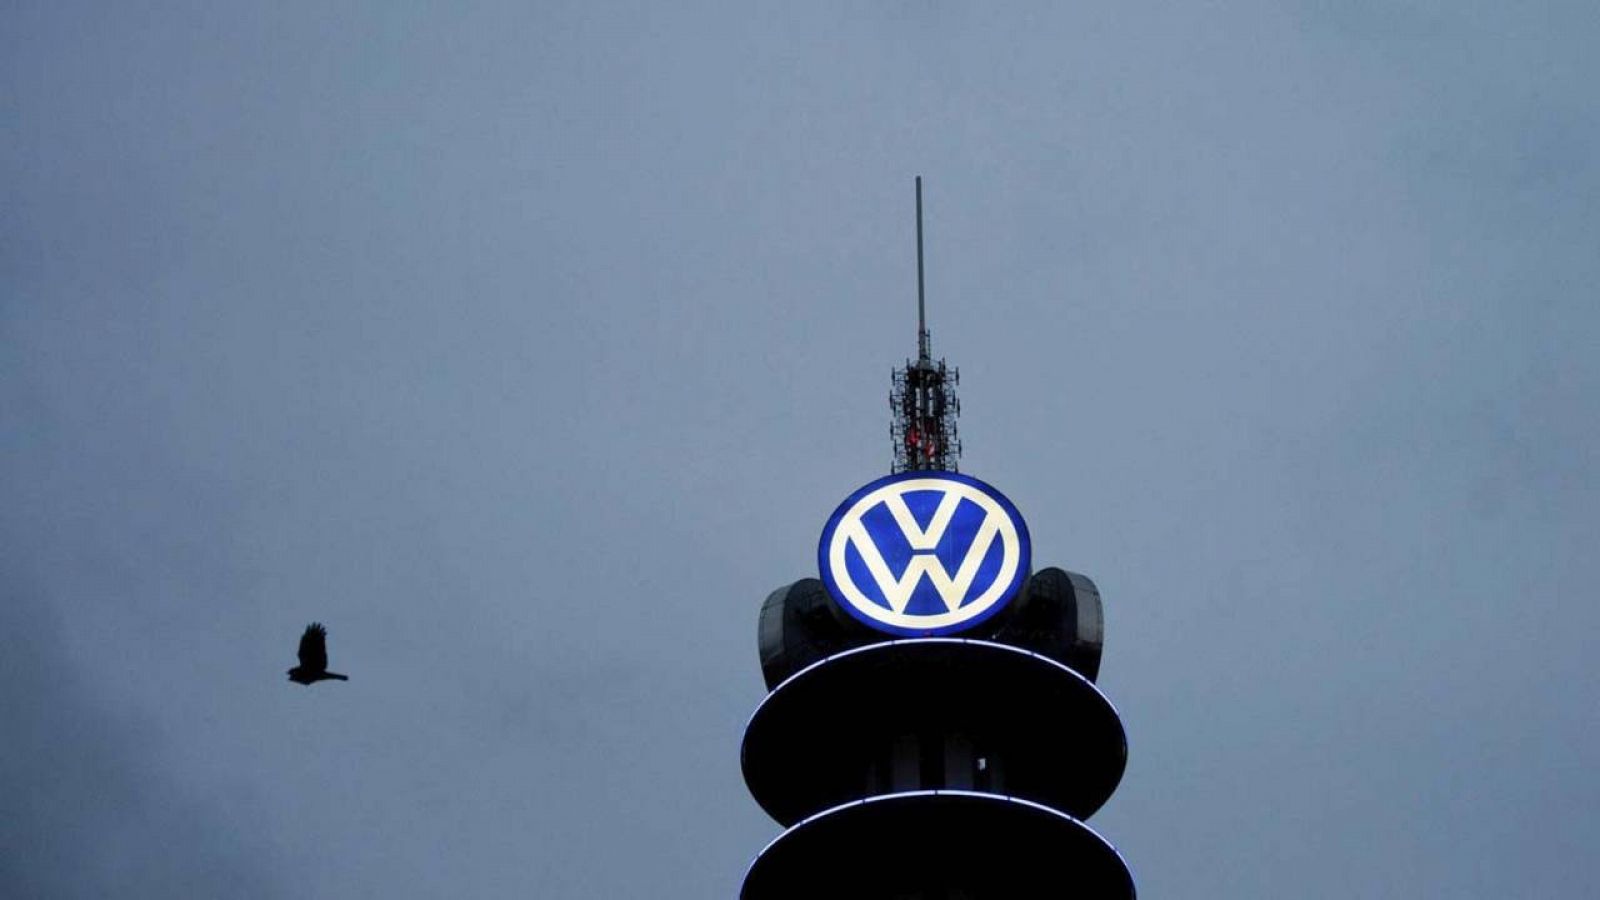 Logotipo de Volkswagen en la Tower Volkswagen de Hannover